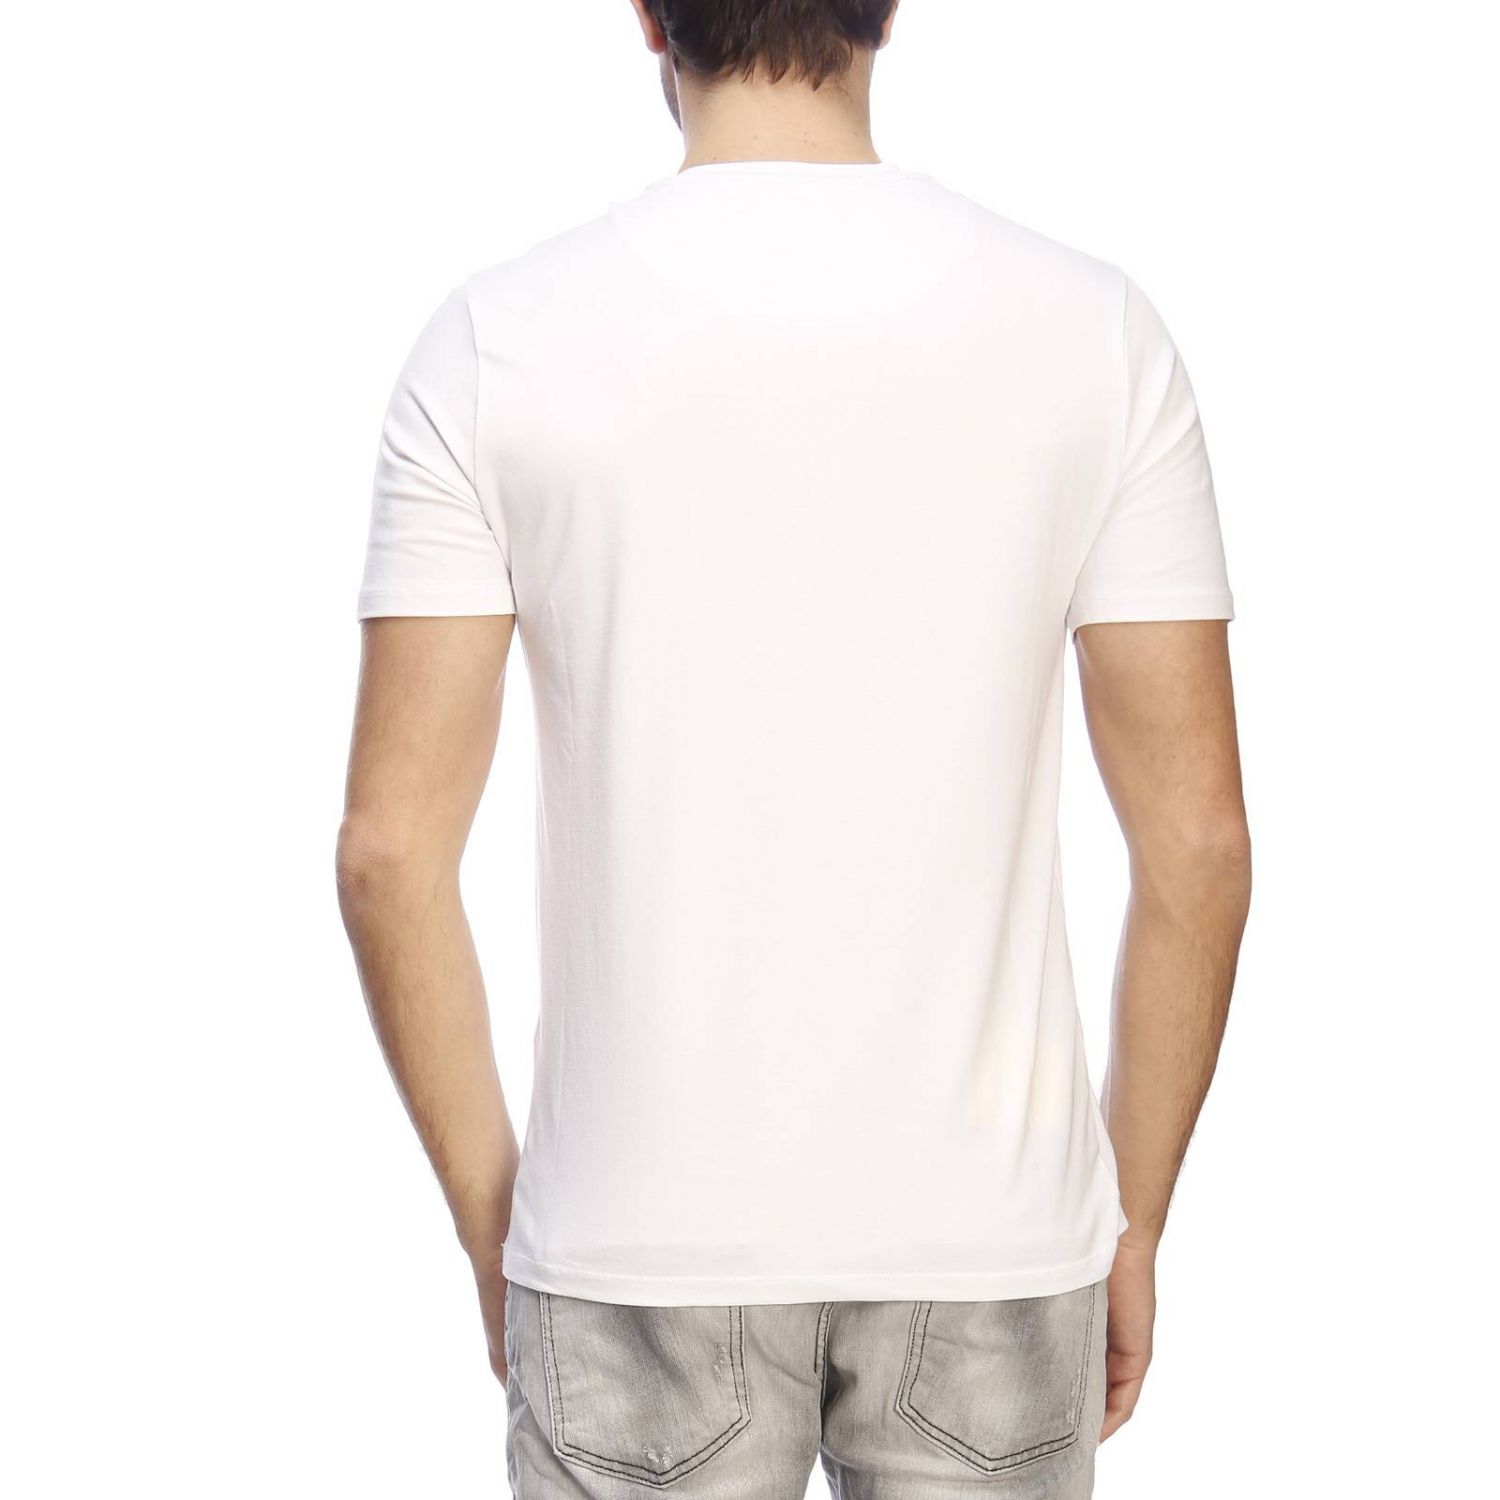 Frankie Morello Outlet: t-shirt for man - White | Frankie Morello t ...